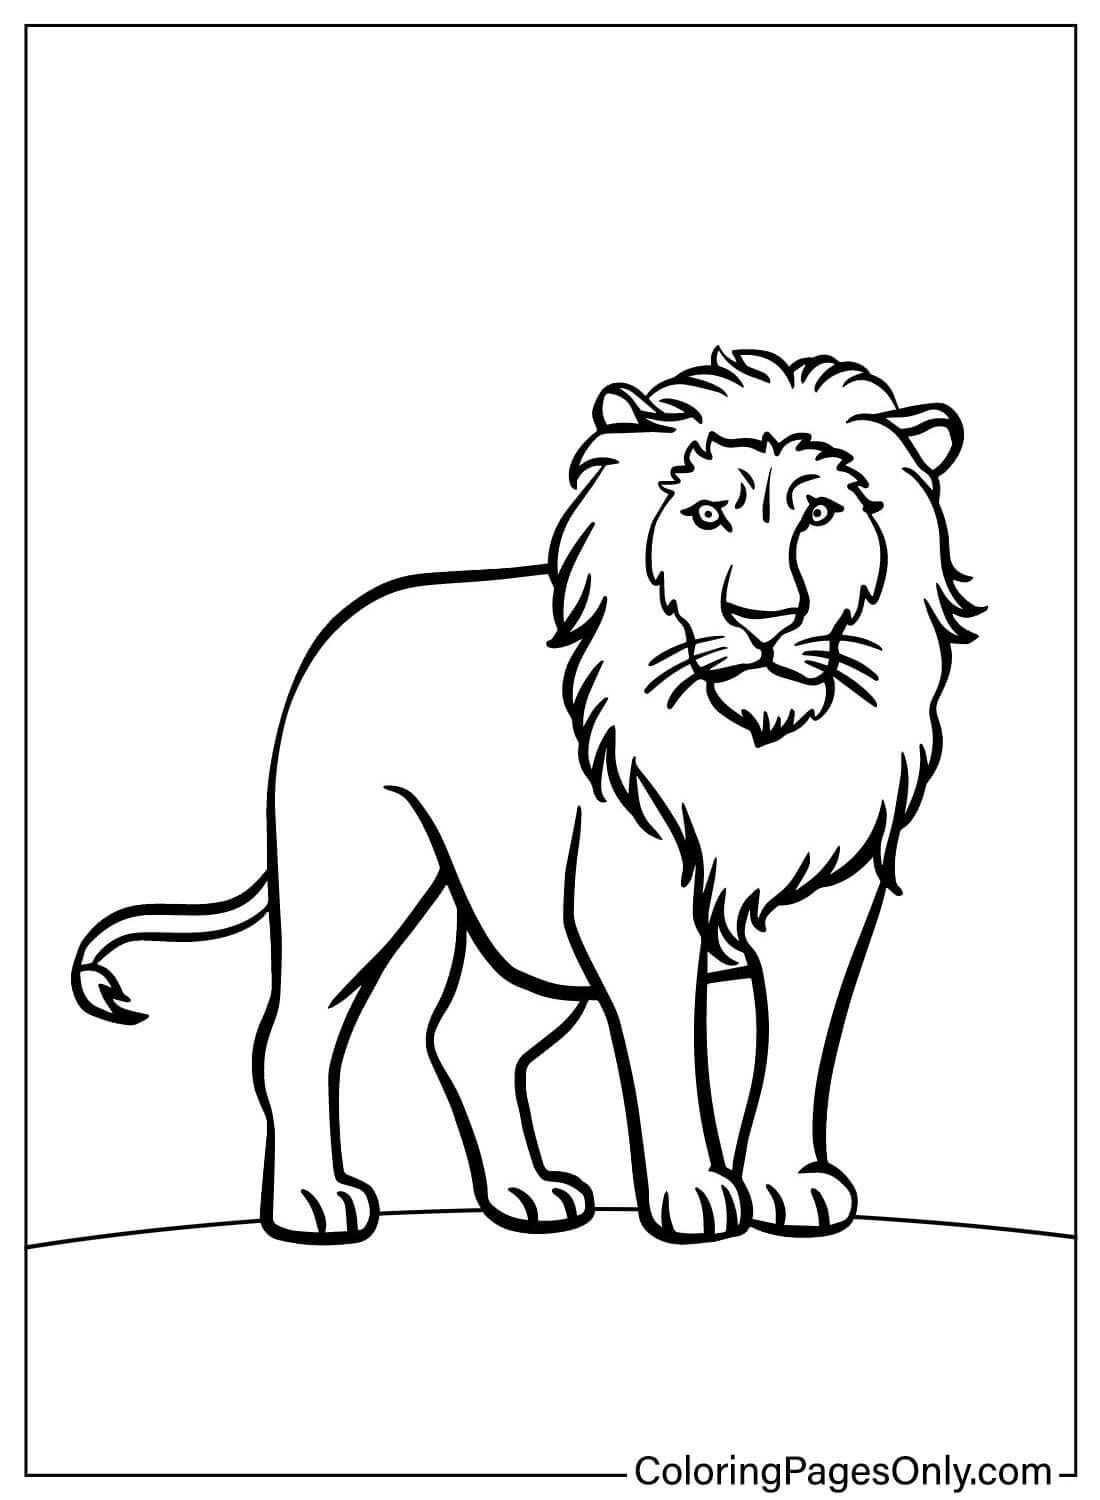 Página para colorir do Leão para impressão do Leão